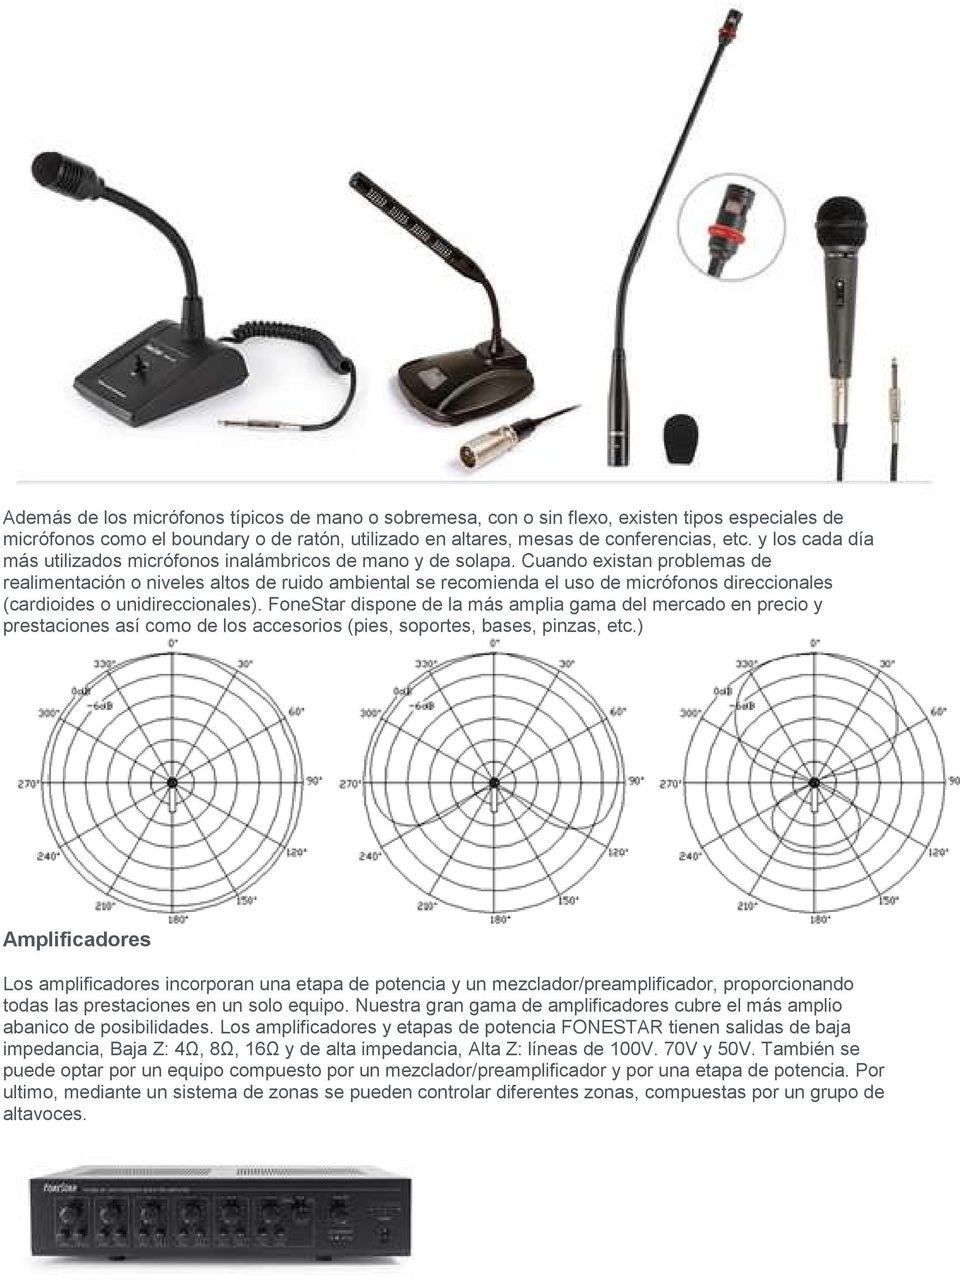 Cuando existan problemas de realimentación o niveles altos de ruido ambiental se recomienda el uso de micrófonos direccionales (cardioides o unidireccionales).